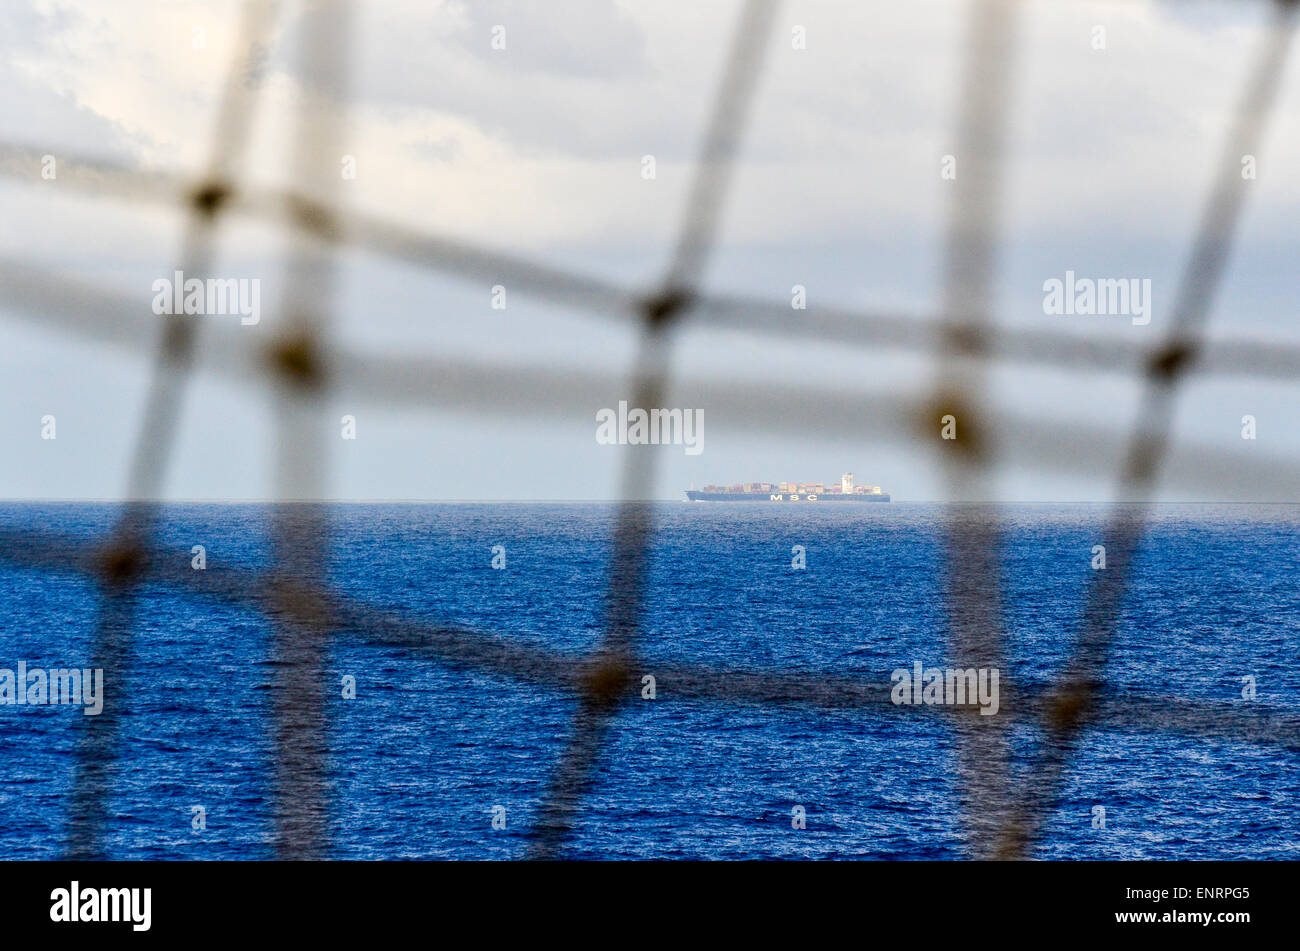 Buque portacontenedores en el océano Atlántico vista a través de una red Foto de stock